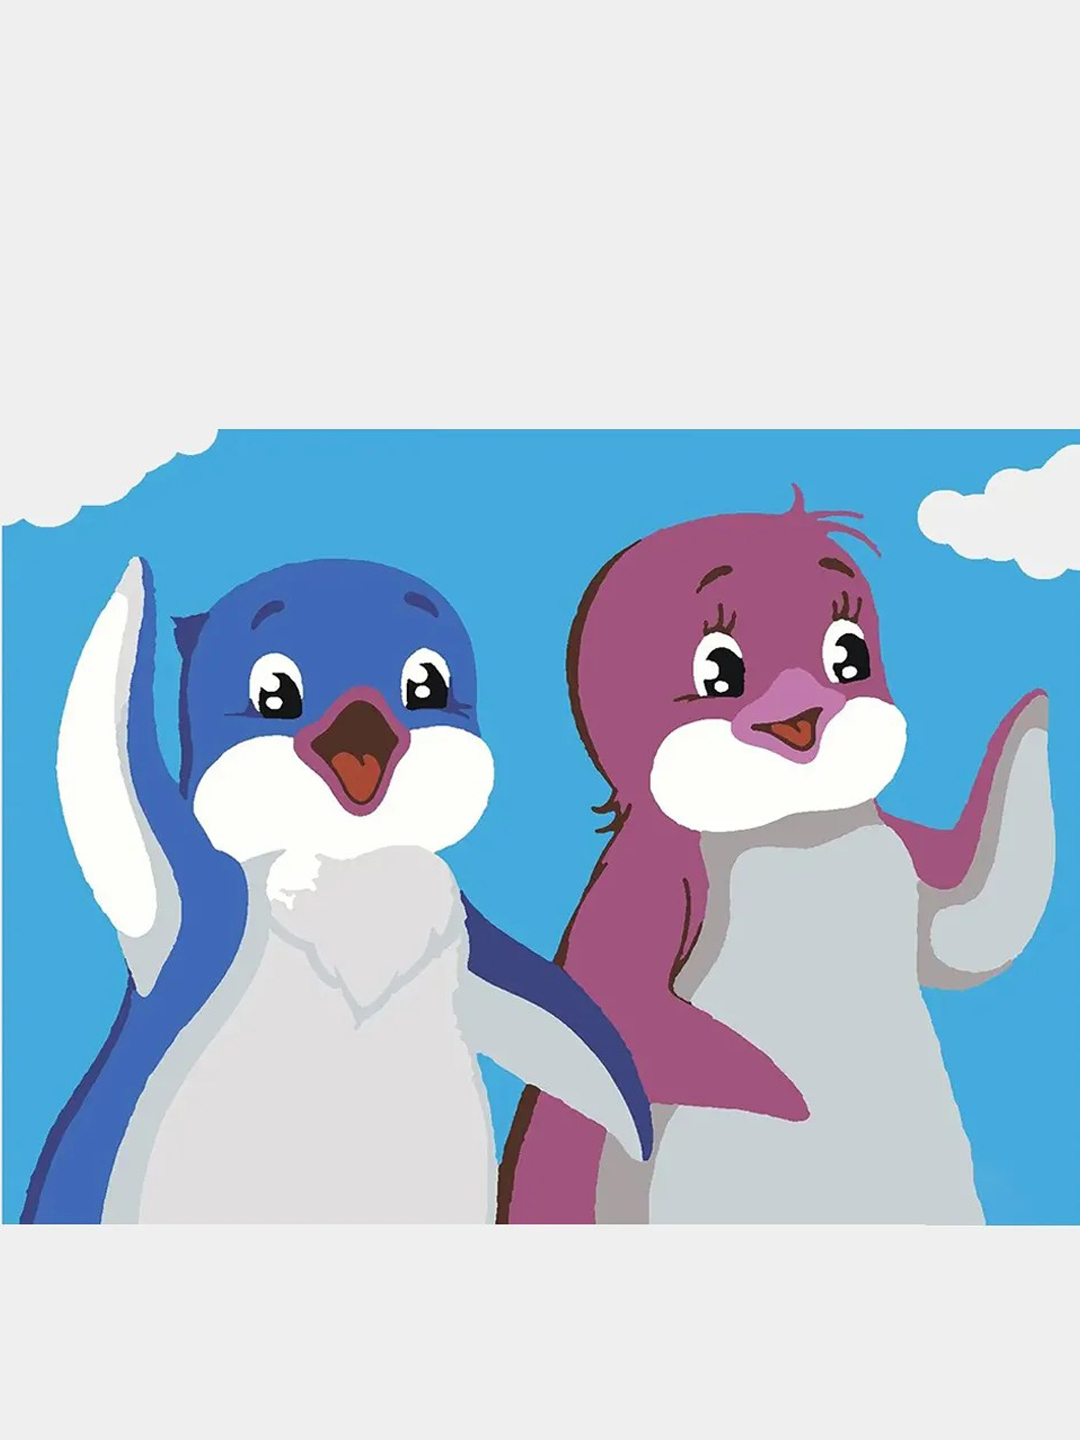 Пингвины из мультфильма Лоло и Пепе